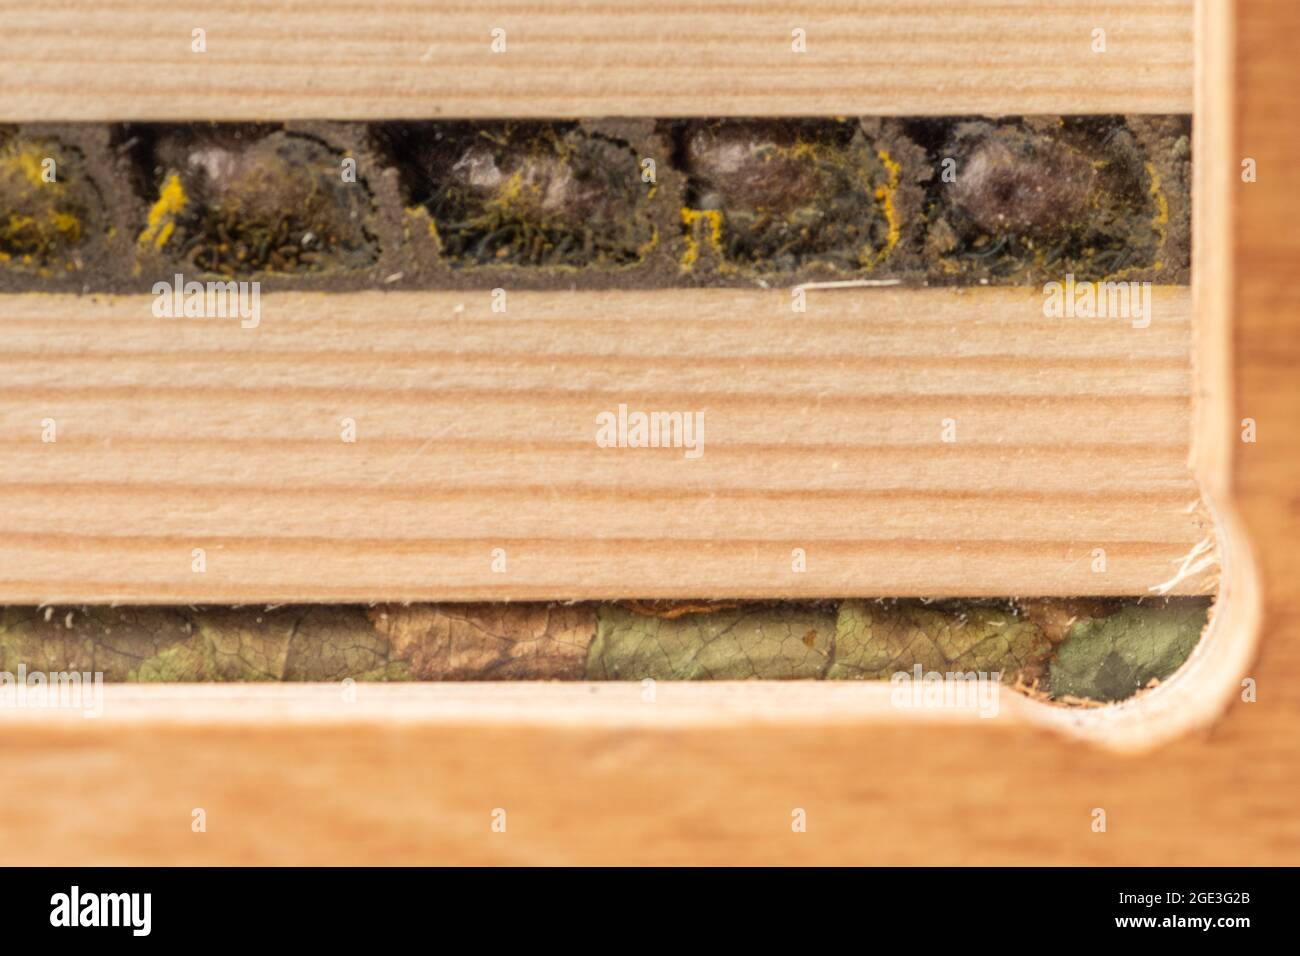 All'interno di un hotel di api che mostra le cellule di allevamento e i bozzoli di un'ape di muratore rosso (in alto) e un'ape di taglio a pezzetti (in basso), Regno Unito Foto Stock